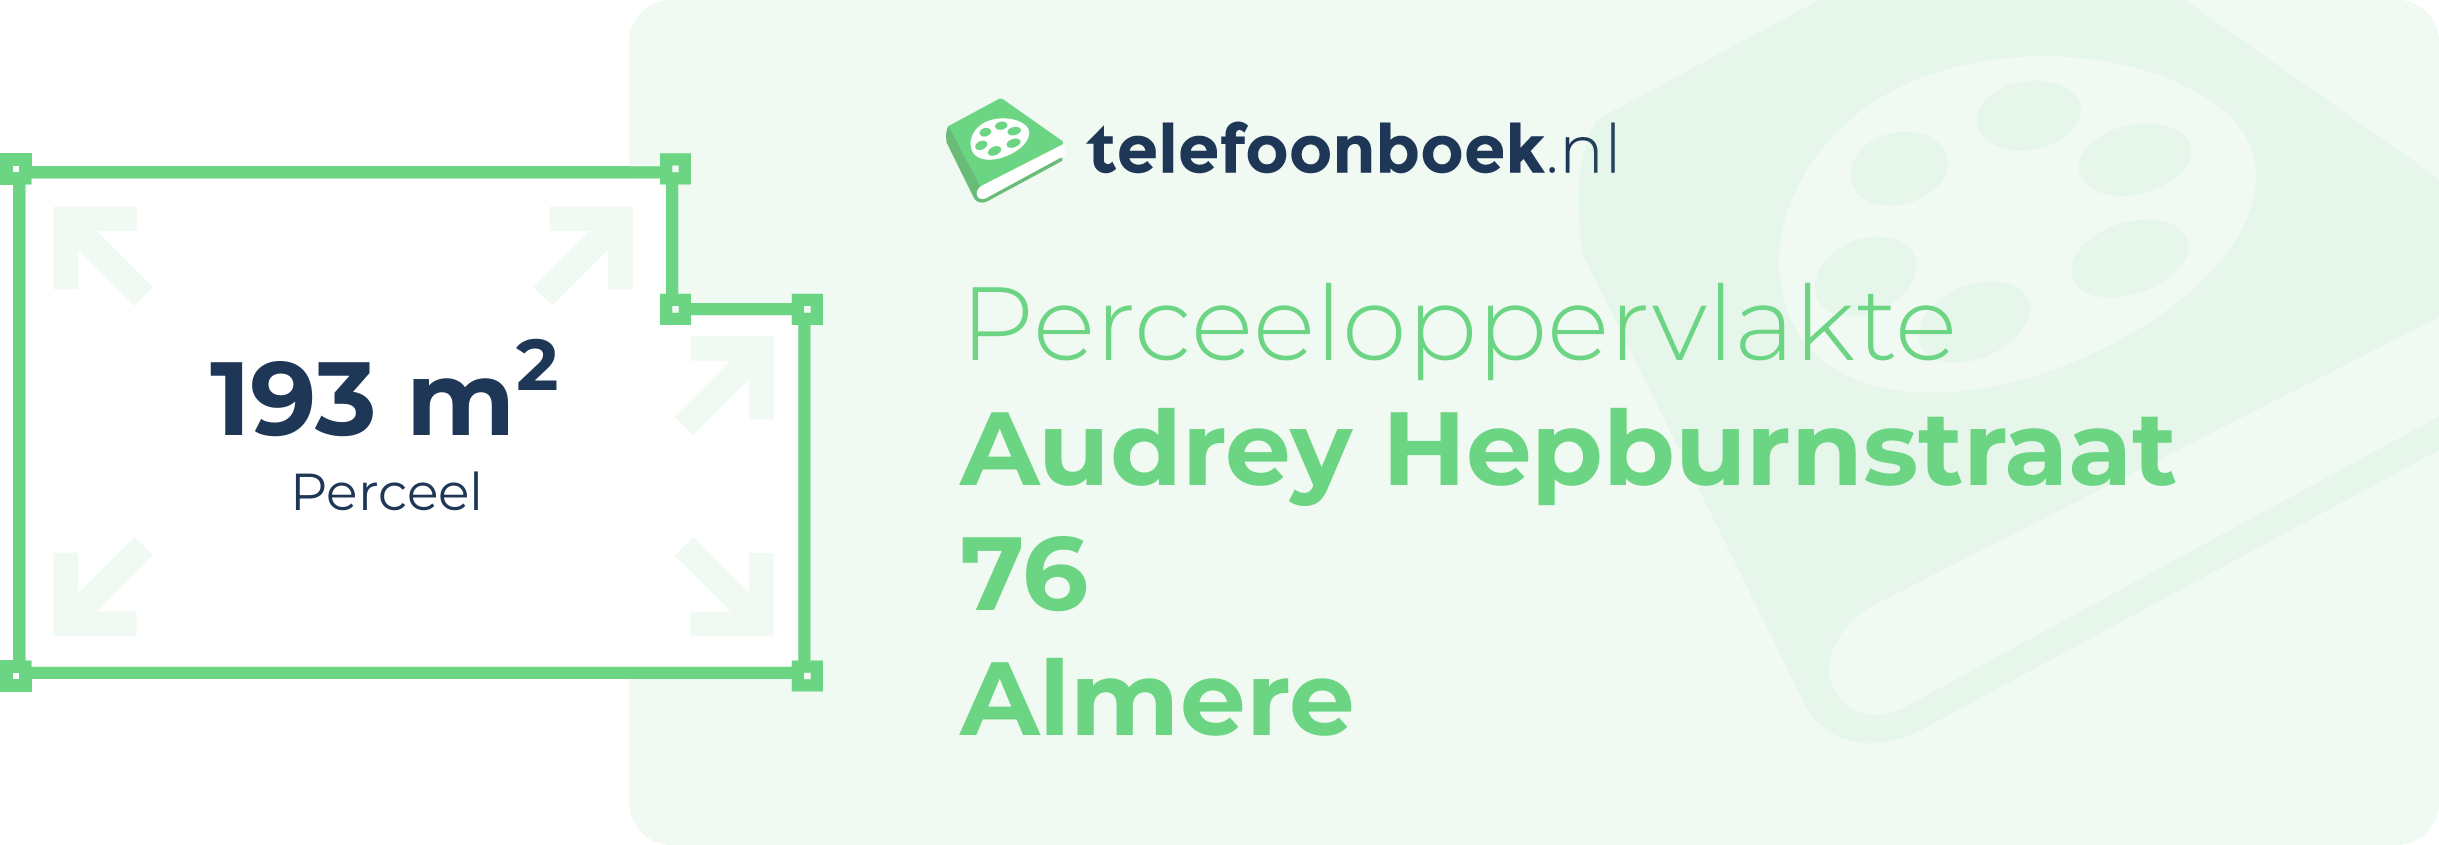 Perceeloppervlakte Audrey Hepburnstraat 76 Almere